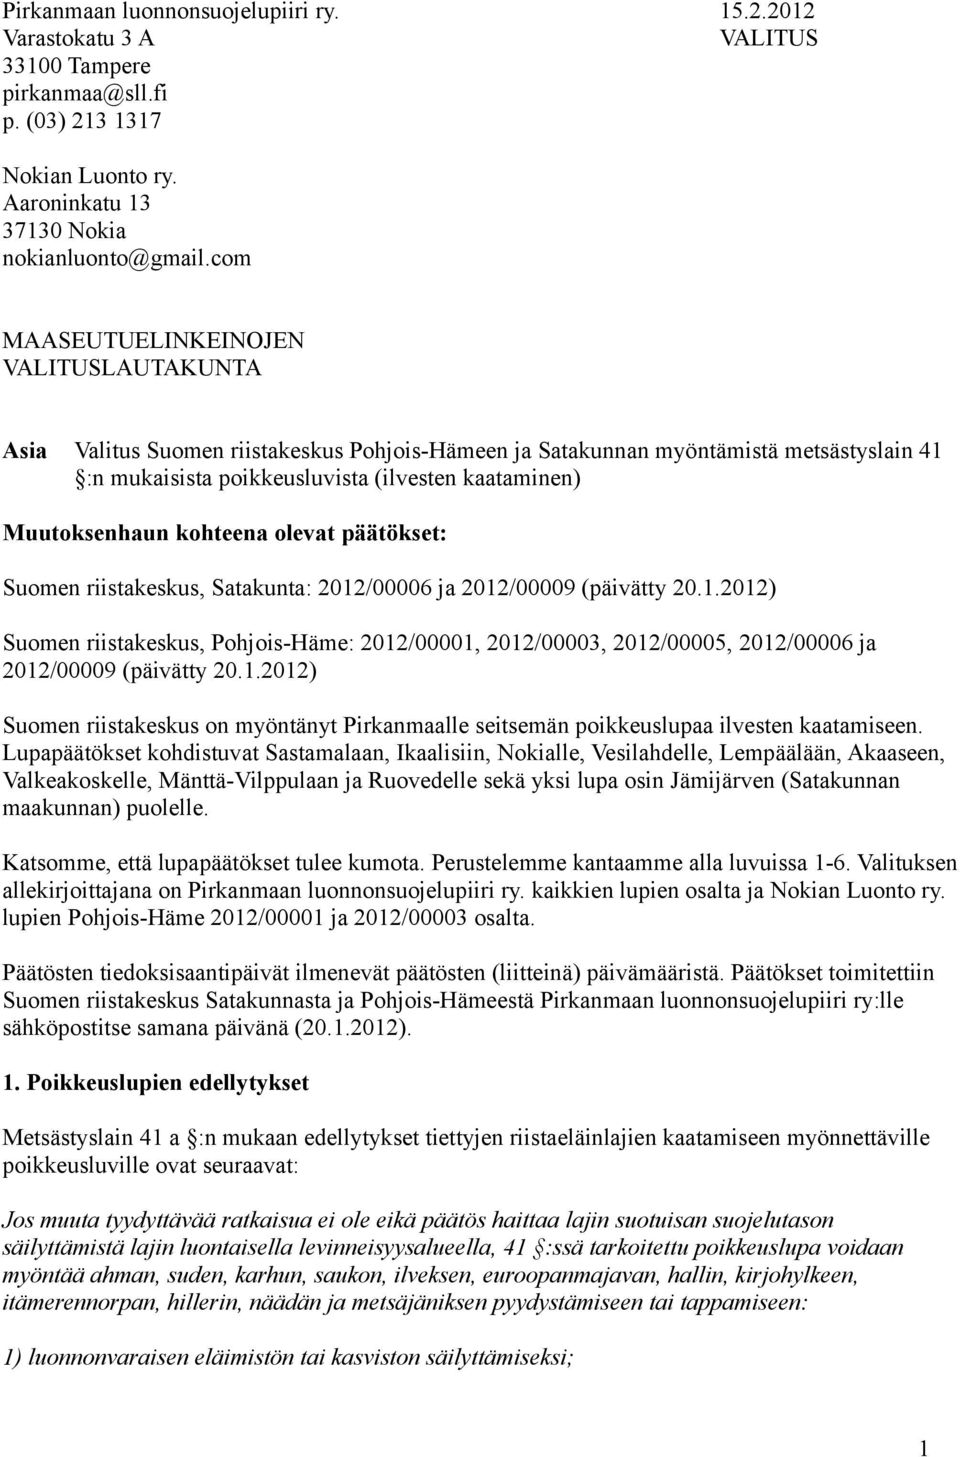 kohteena olevat päätökset: Suomen riistakeskus, Satakunta: 2012/00006 ja 2012/00009 (päivätty 20.1.2012) Suomen riistakeskus, Pohjois-Häme: 2012/00001, 2012/00003, 2012/00005, 2012/00006 ja 2012/00009 (päivätty 20.